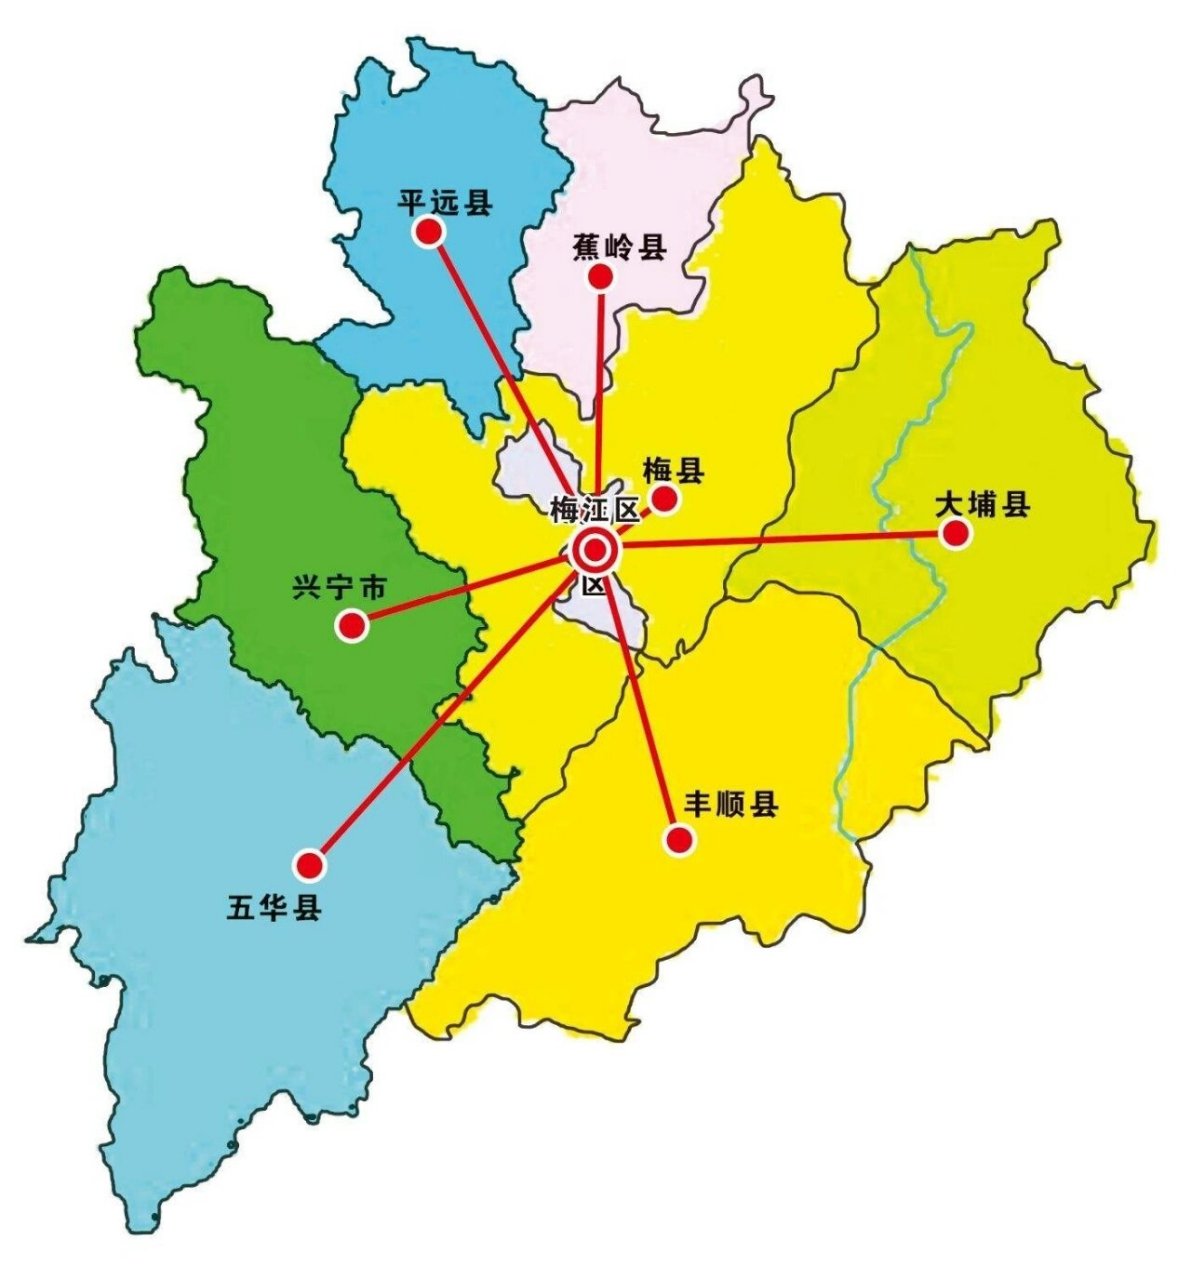 梅州 梅州,广东省辖地级市,古称敬州,闽粤赣边区域性中心城市